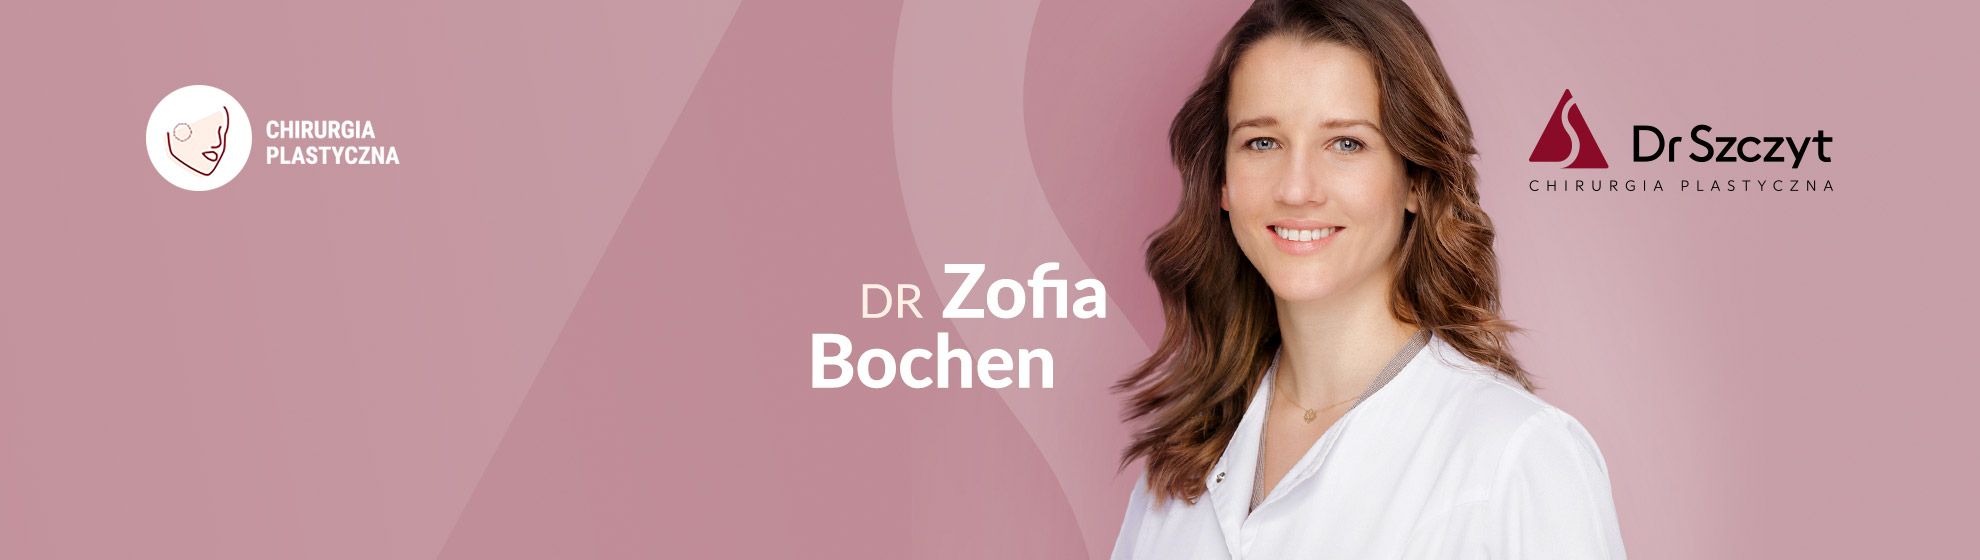 Dr Zofia Bochen